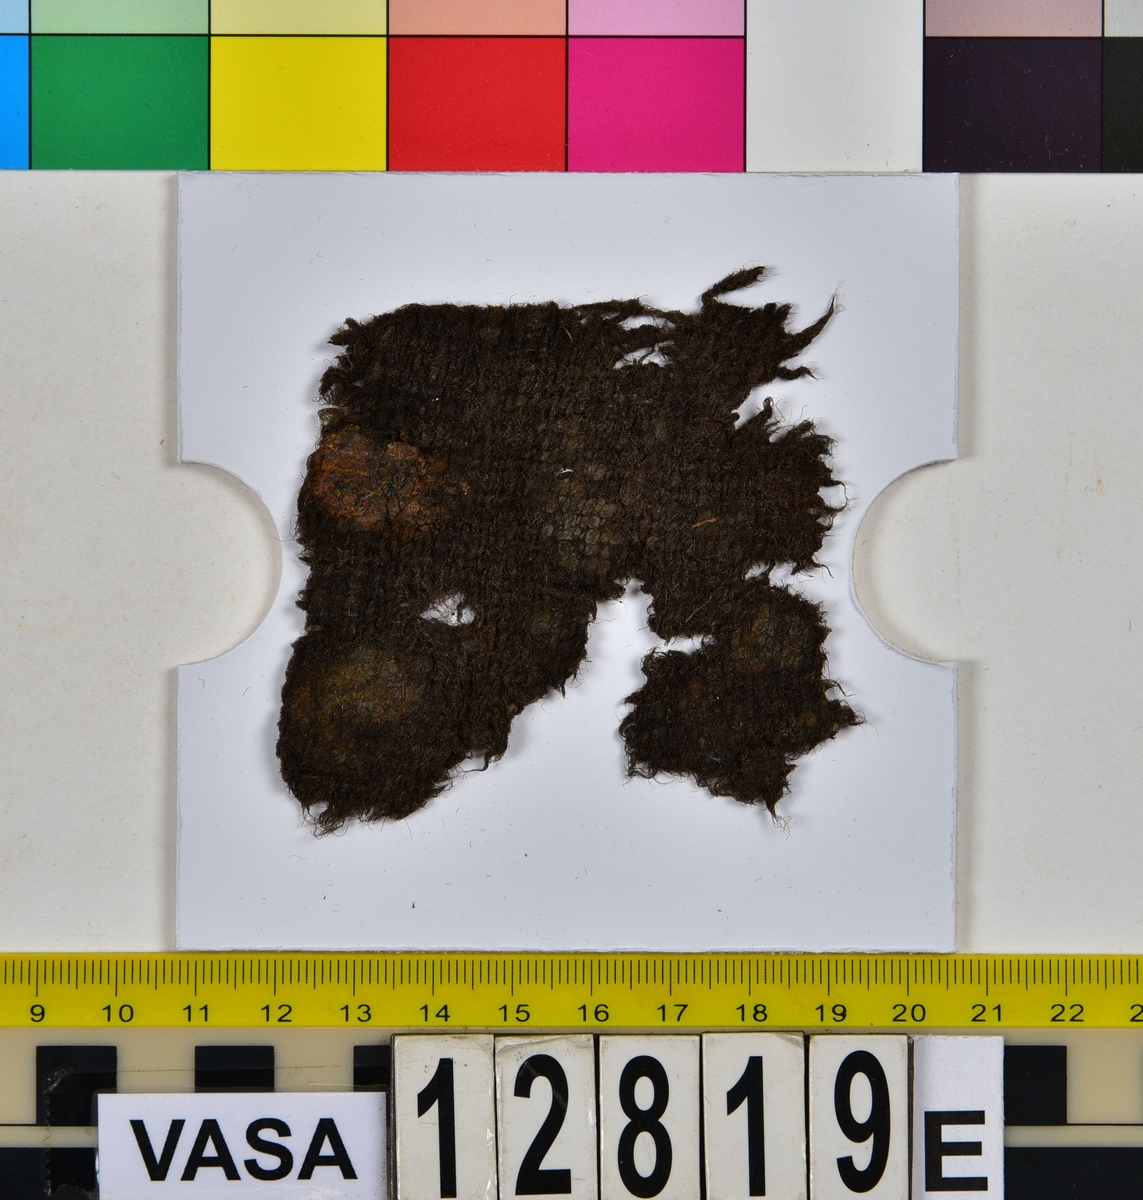 Textilfragment.
34 textilfragment uppdelade på fyndnummer 12819a-h.
Fnr 12819a består av 7 filtade fragment av ull eller bäver.
Fnr 12819b är ett vävt och valkat fragment av ull.
Fnr 12819c är ett fragment av ull vävt i 2/1-kypert samt valkat på ena sidan.
Fnr 12819d består av fyra fragment av ull vävda i tuskaft. Ett av fragmenten har en tydlig originalkant bevarad.
Fnr 12819e består av ett fragment av ull vävt i tuskaft.
Fnr 12819f består av 10 fragment av ull vävda i tuskaft. Ett av fragmenten har en tydlig originalkant bevarad.
Fnr 12819g är två fragment av ull vävda i 2/1-kypert. 
Fnr 12819h består av 8 fragment av ull vävda i tuskaft. Ett av fragmenten har många vävfel (hoppor). Ett av fragmenten har en tydlig originalkant bevarad.